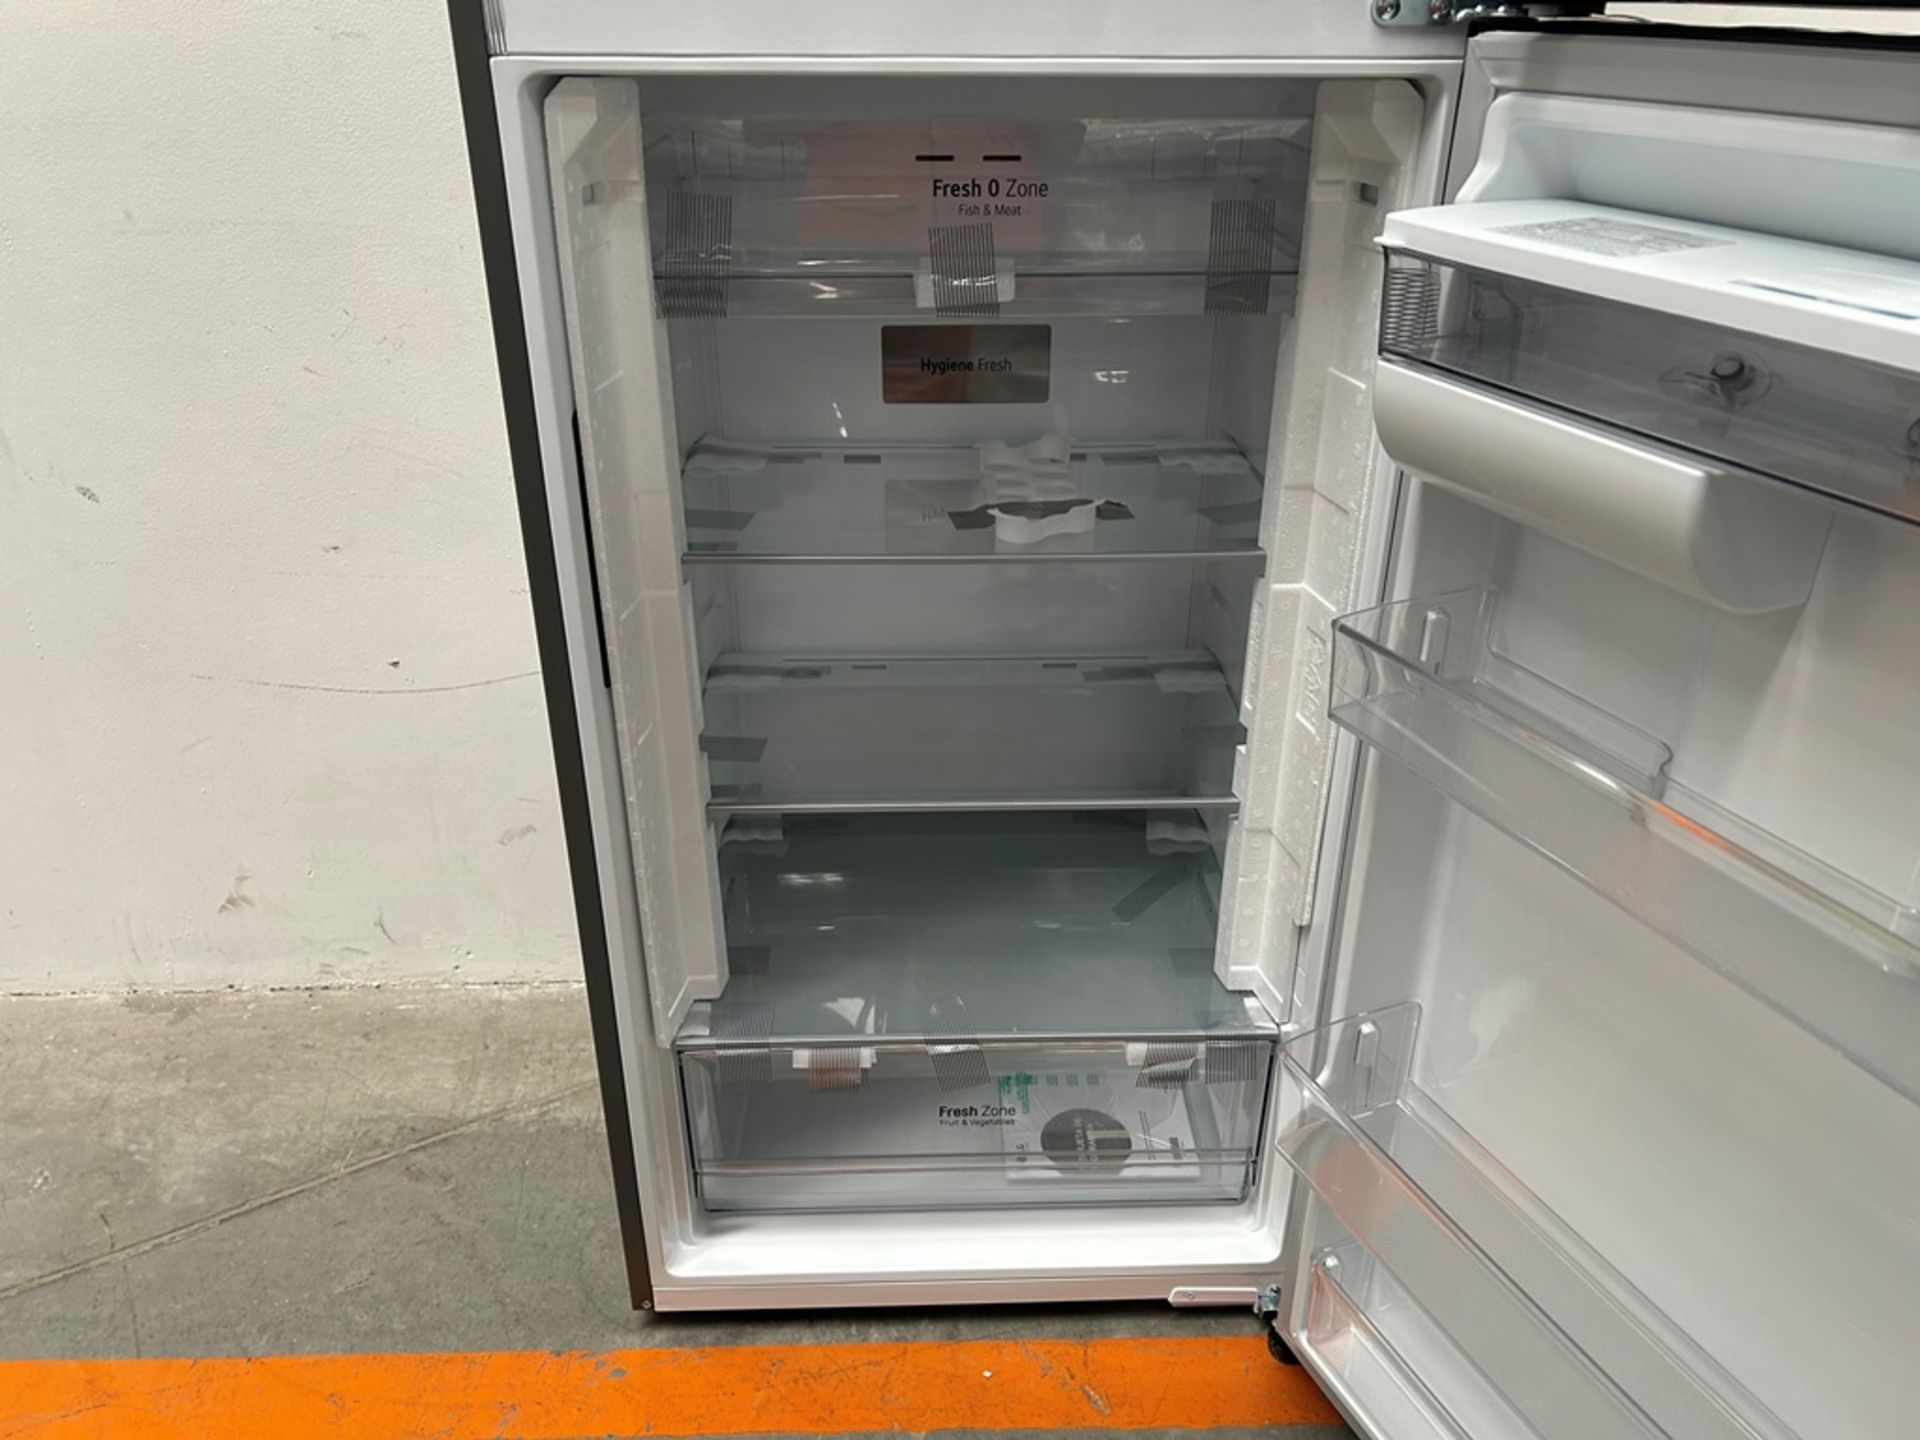 (NUEVO) Refrigerador con dispensador de agua Marca LG, Modelo VT40AWP, Serie 1S414, Color GRIS - Image 6 of 11